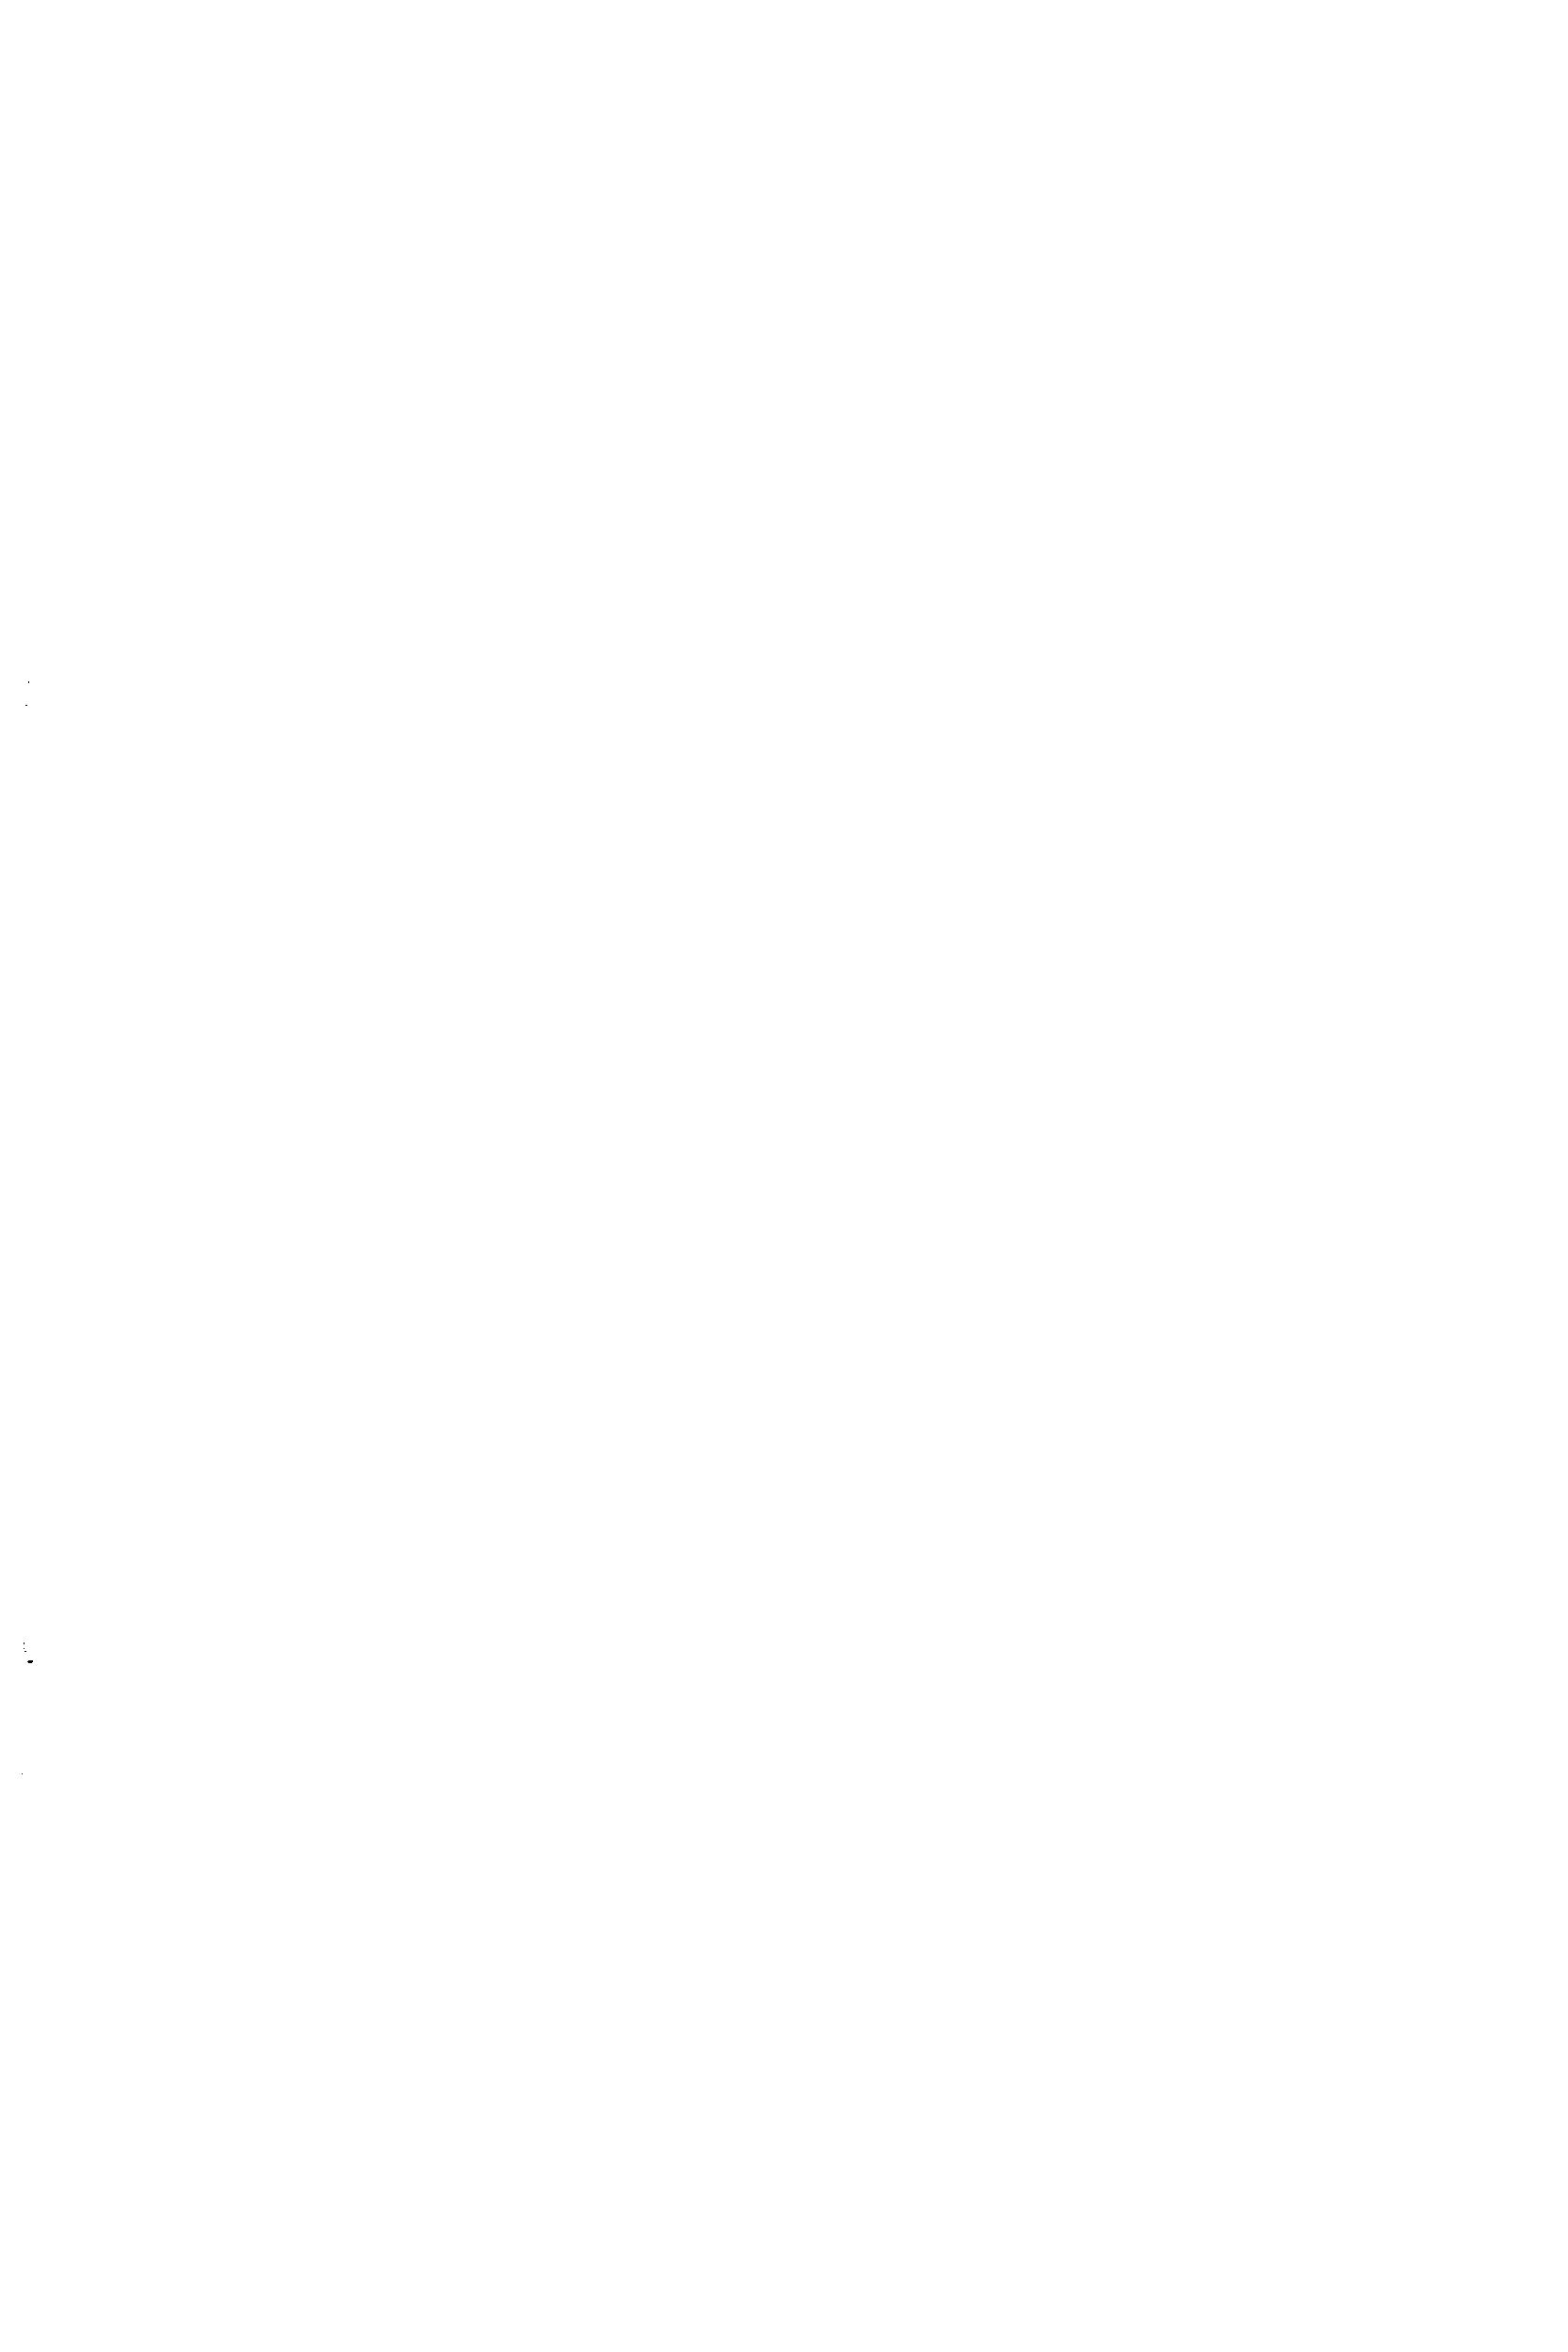 Рис. 10. Полуавтоматический строповый захват о — строп в рабочем положении с грузом б —захват / — универсальный (кольцевой) строп — строповый захват 3 — вспомогательный <a href="/info/60499">пеньковый-канат</a> 4 — маркировочная шайба 5 —гайка 5 — пружина 7 — корпус 8 — ось 9 — шариковый якорь /О —ушко // —перемычка /2 —ролнк (блок) 
